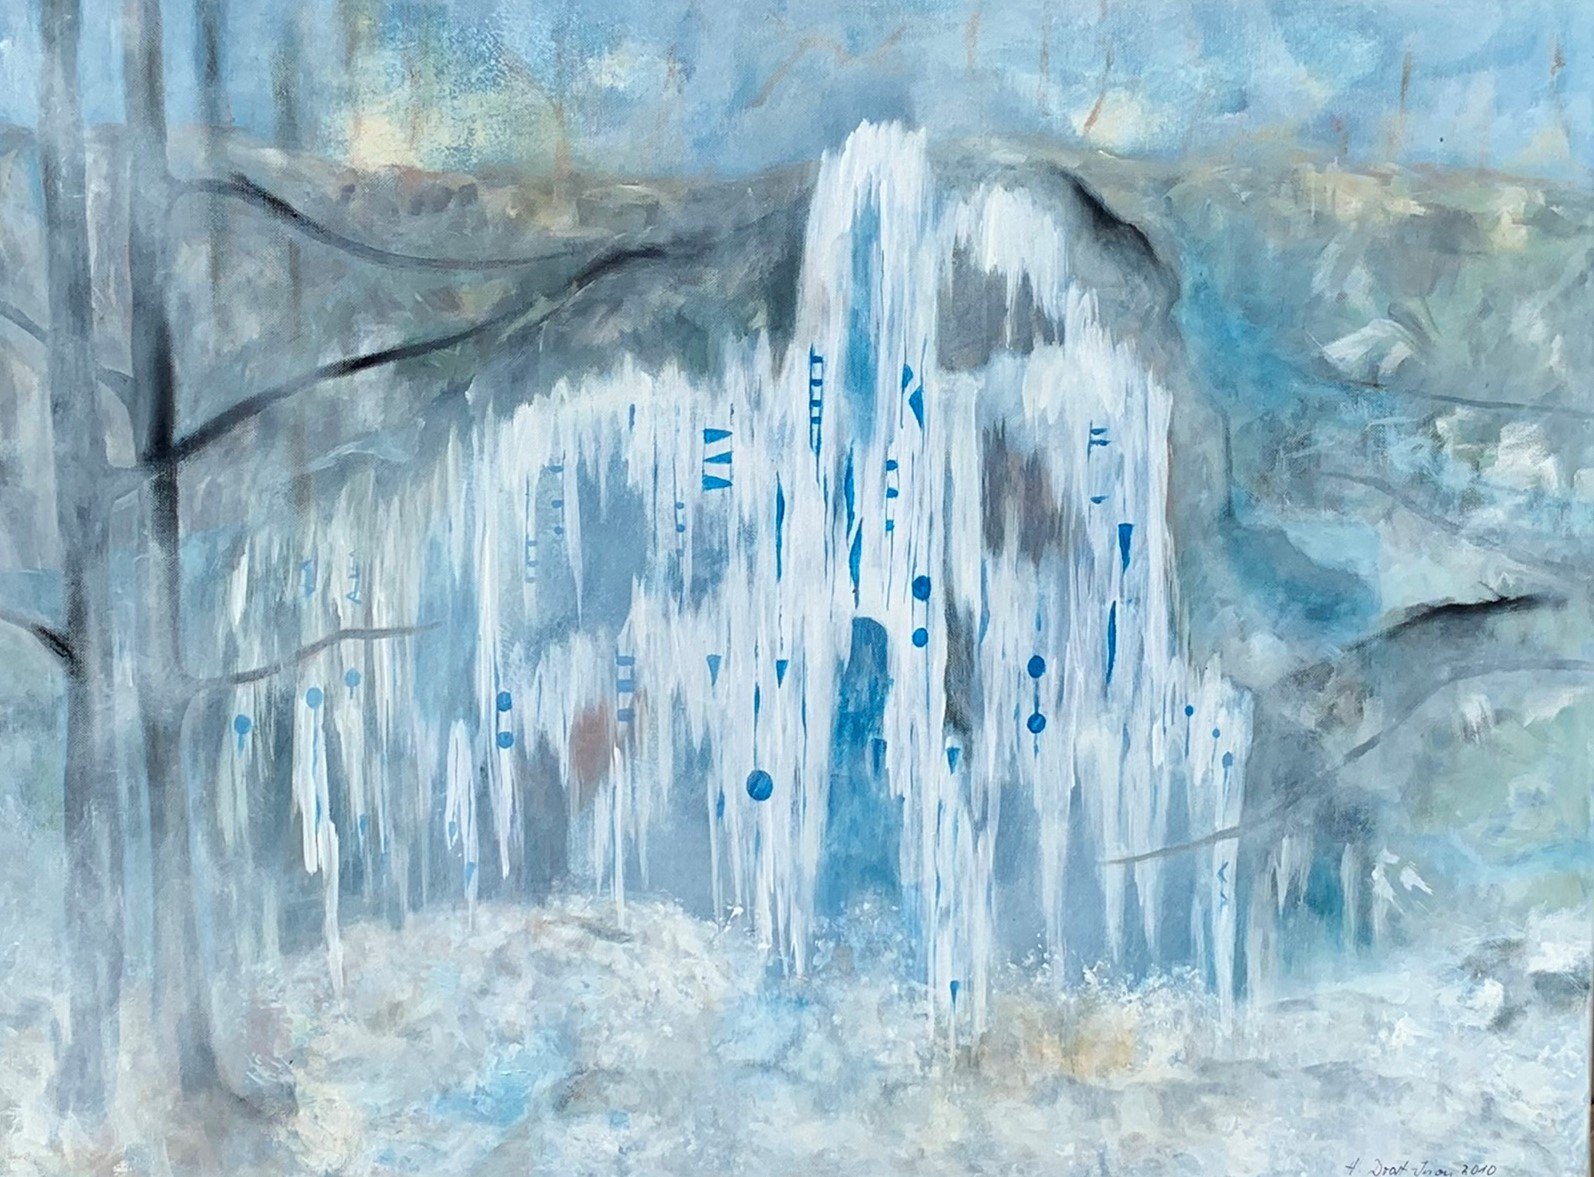 Wasserfall aus Eis in blau weiß gehalten